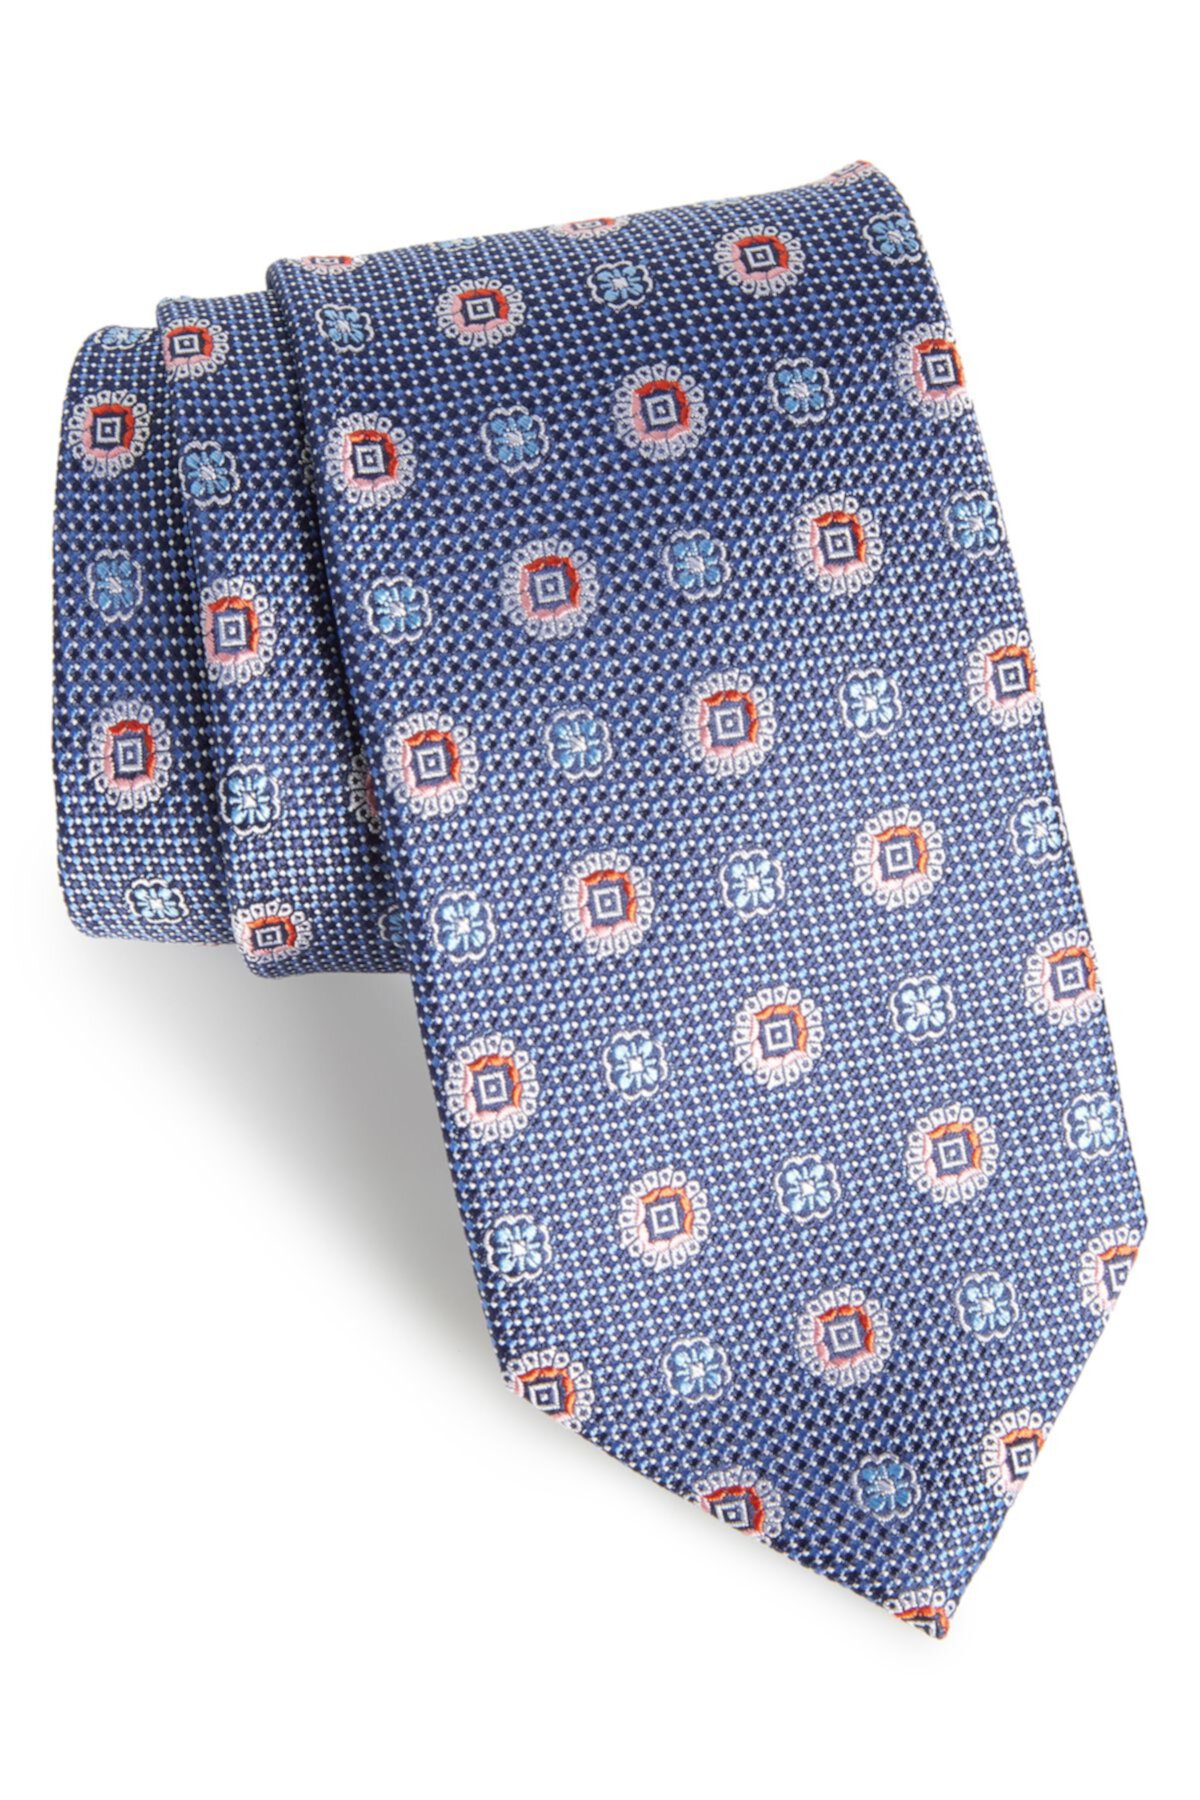 Шелковый галстук Rurwin с медальоном (длинный размер X) NORDSTROM MEN'S SHOP